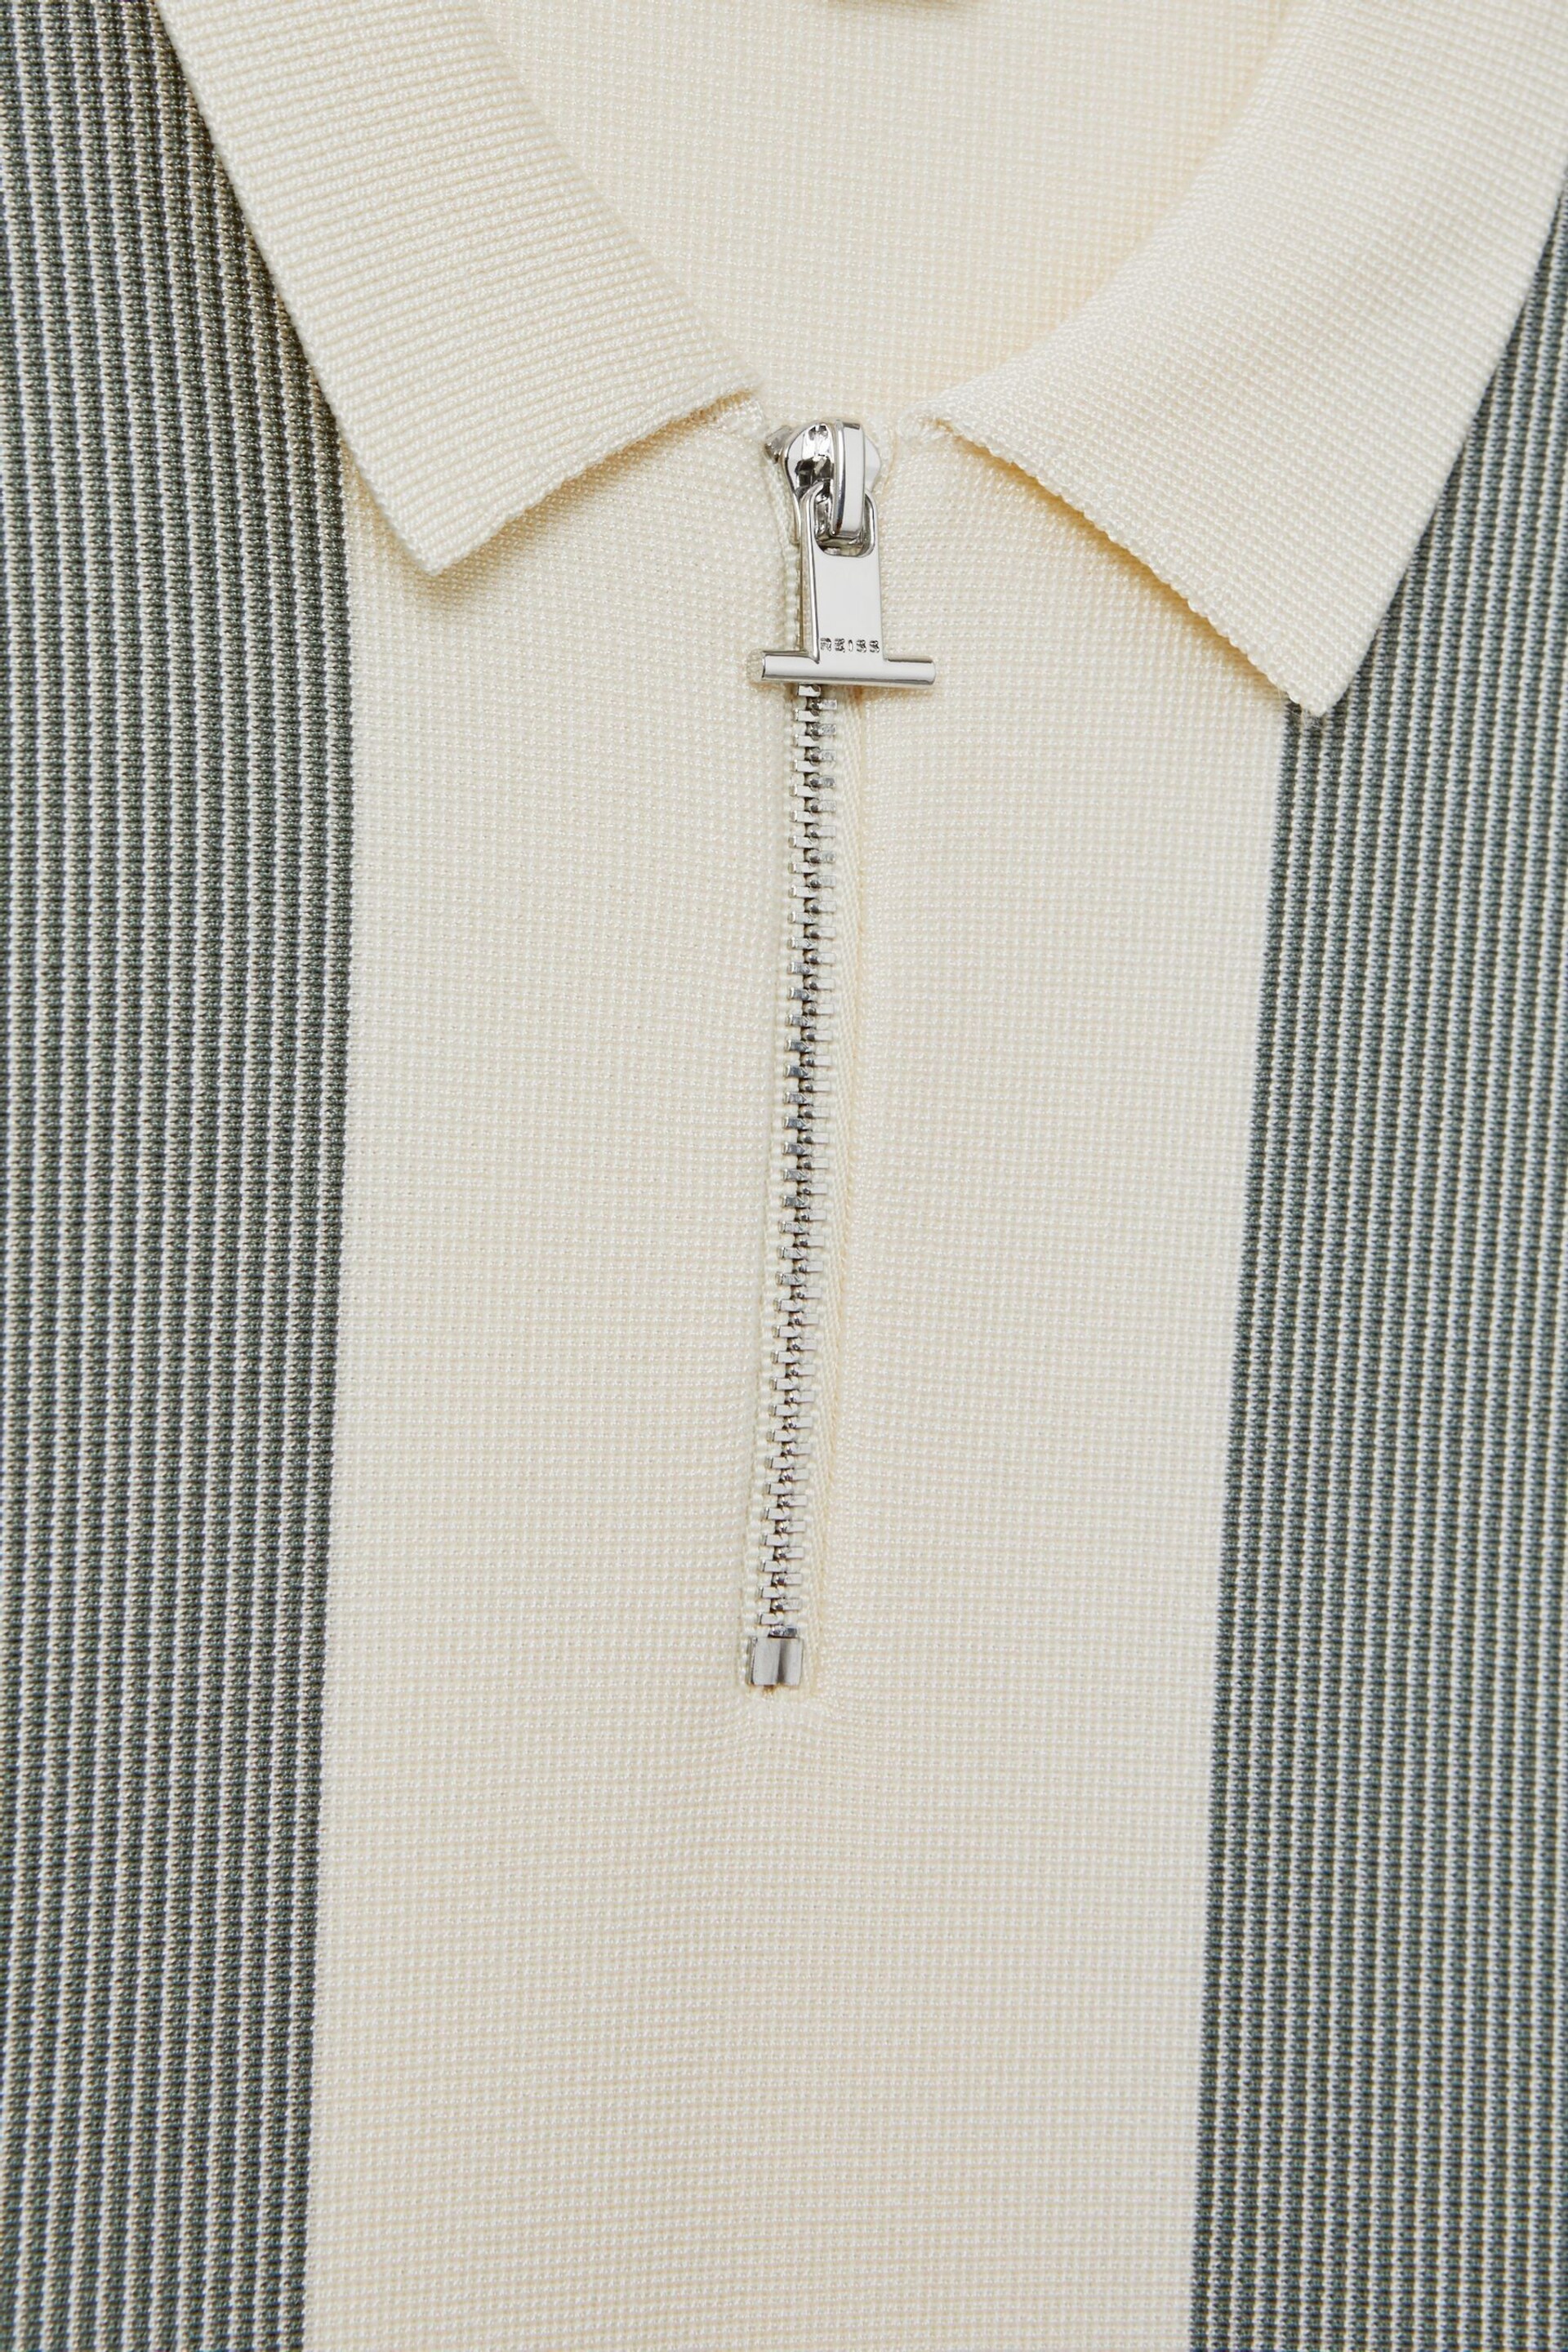 Reiss Sage Milton Senior Half-Zip Striped Polo Shirt - Image 4 of 4